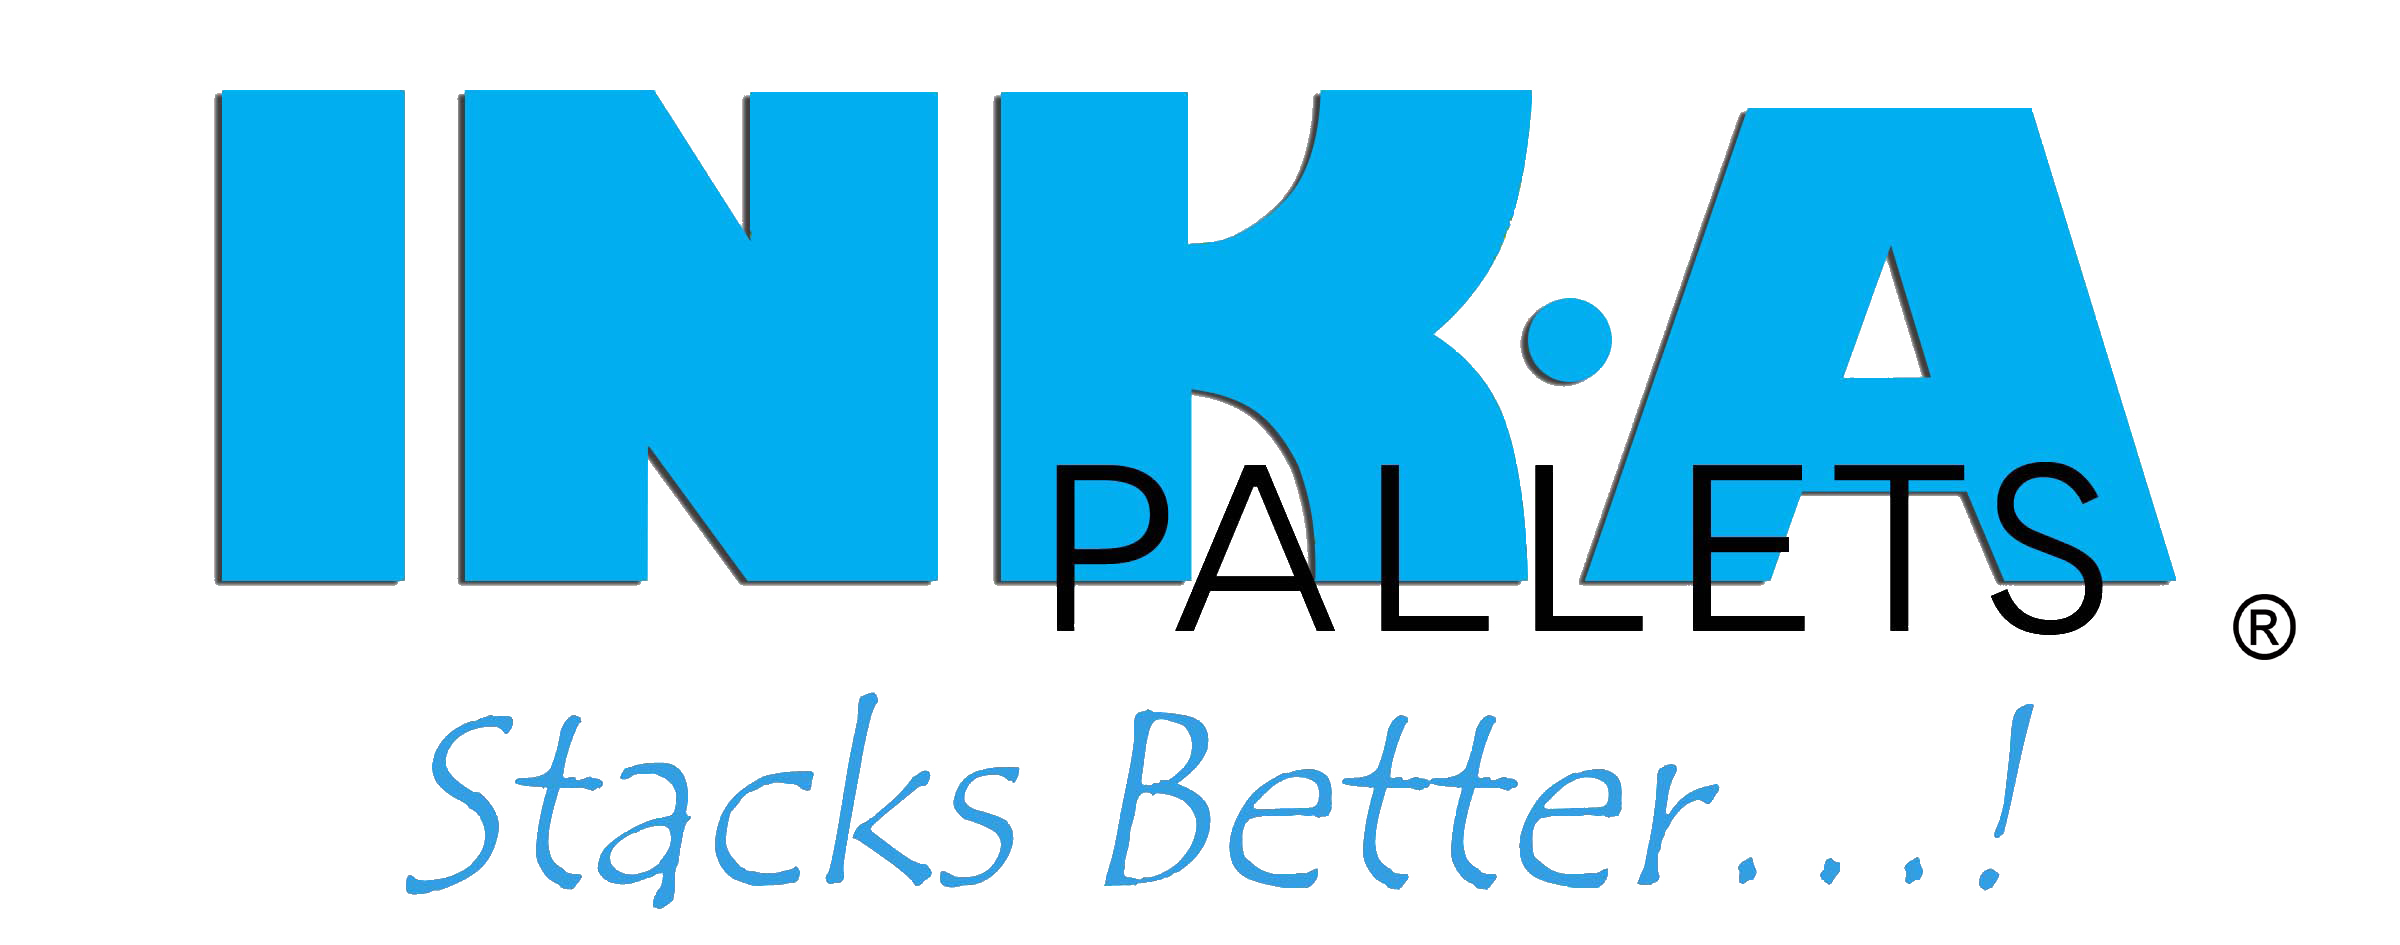 Inka Presswood Pallets Ltd